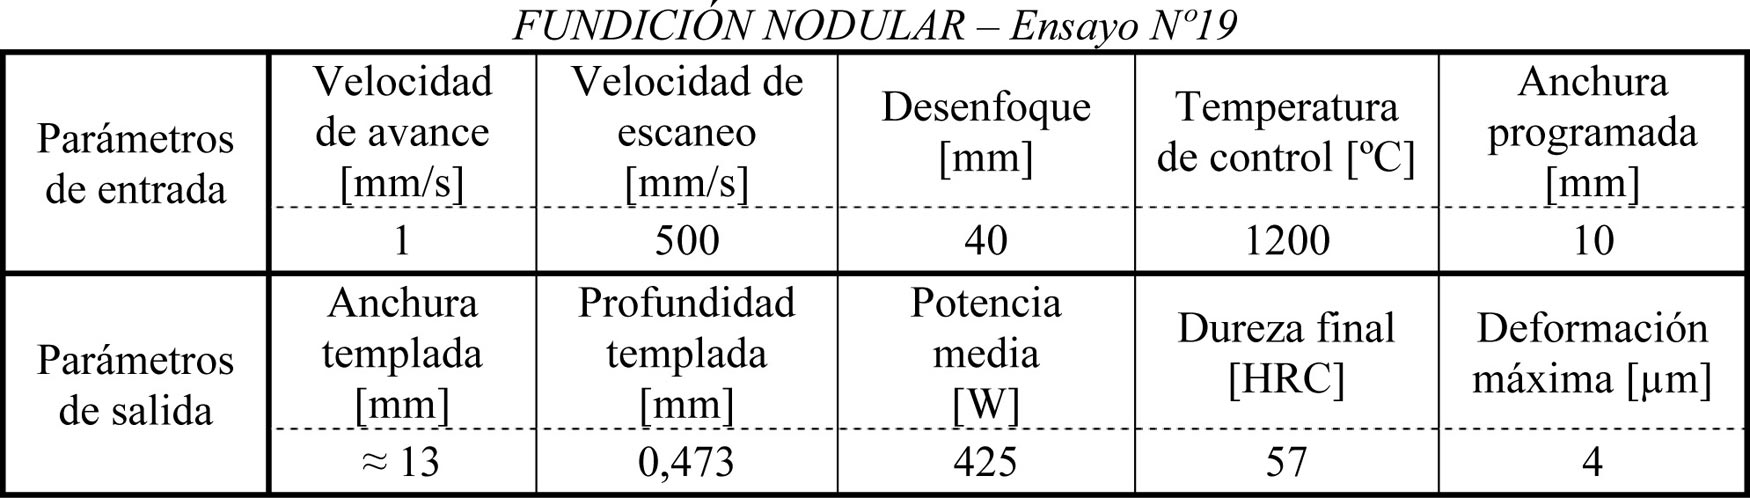 Tabla 1. Parmetros de entrada y de salida medidos para el ensayo N19